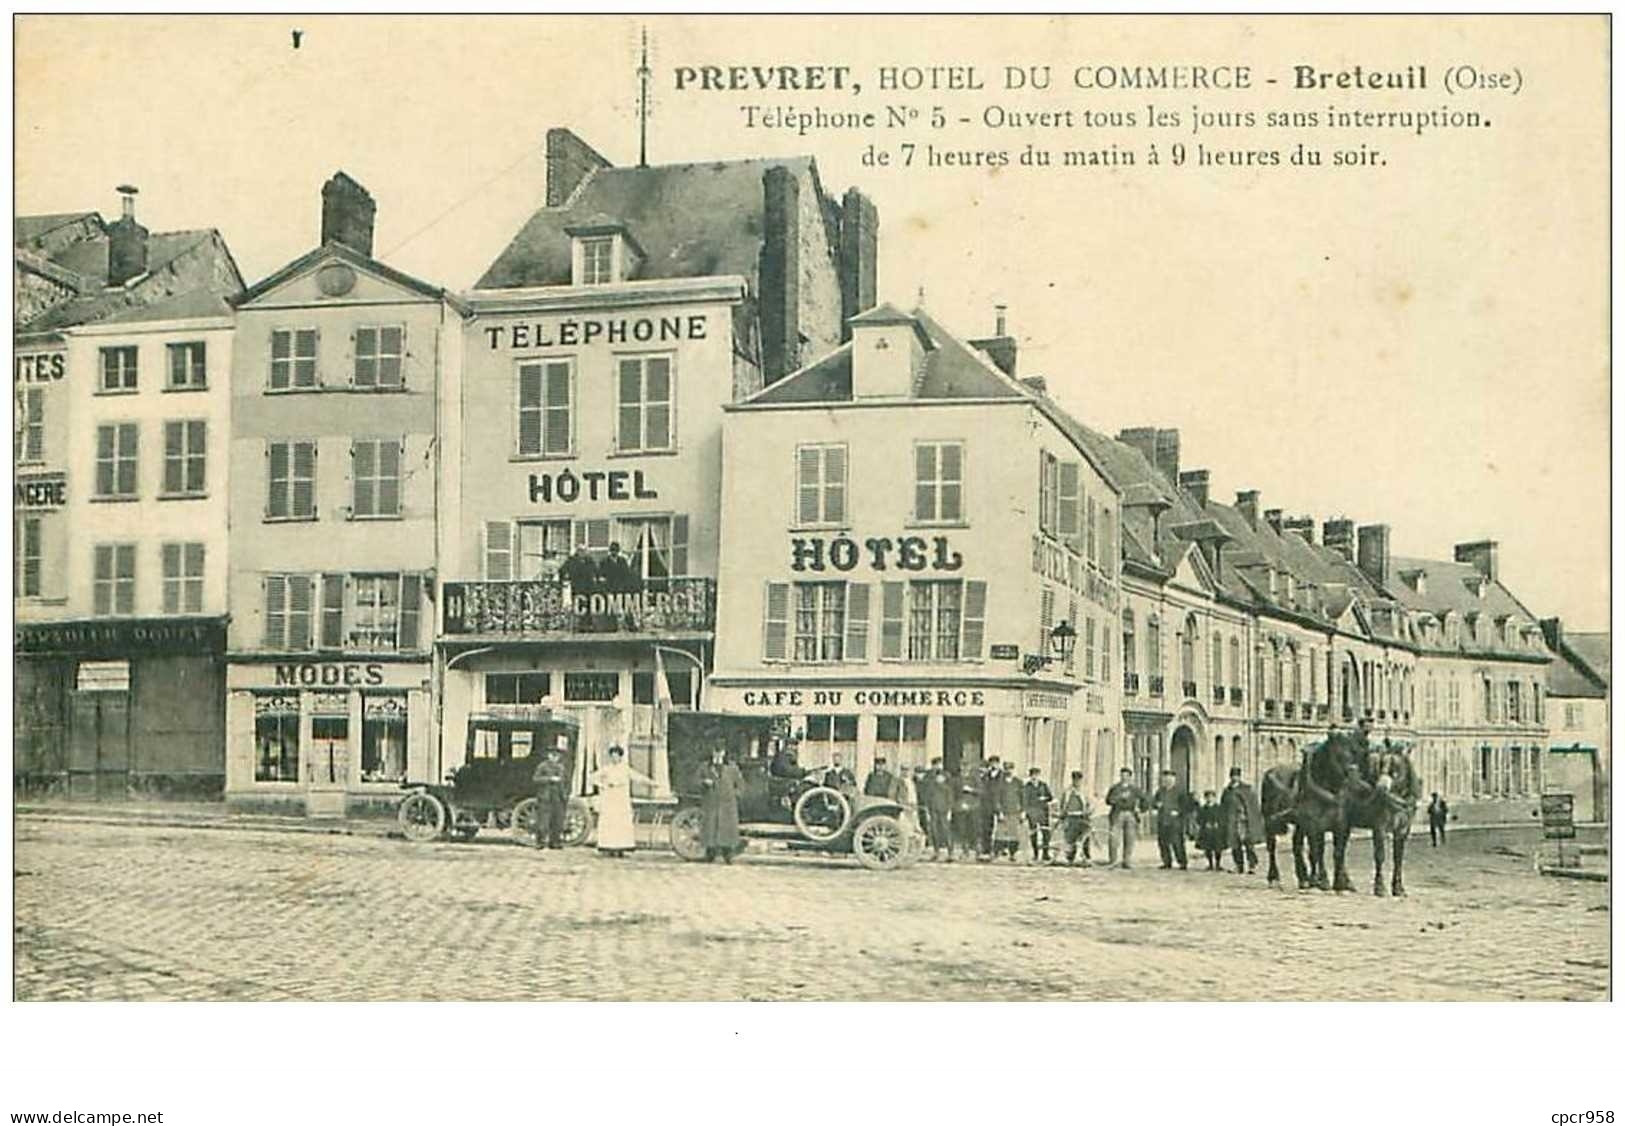 60.BETEUIL.n°26743.PREVERT,HOTEL DU COMMERCE - Breteuil